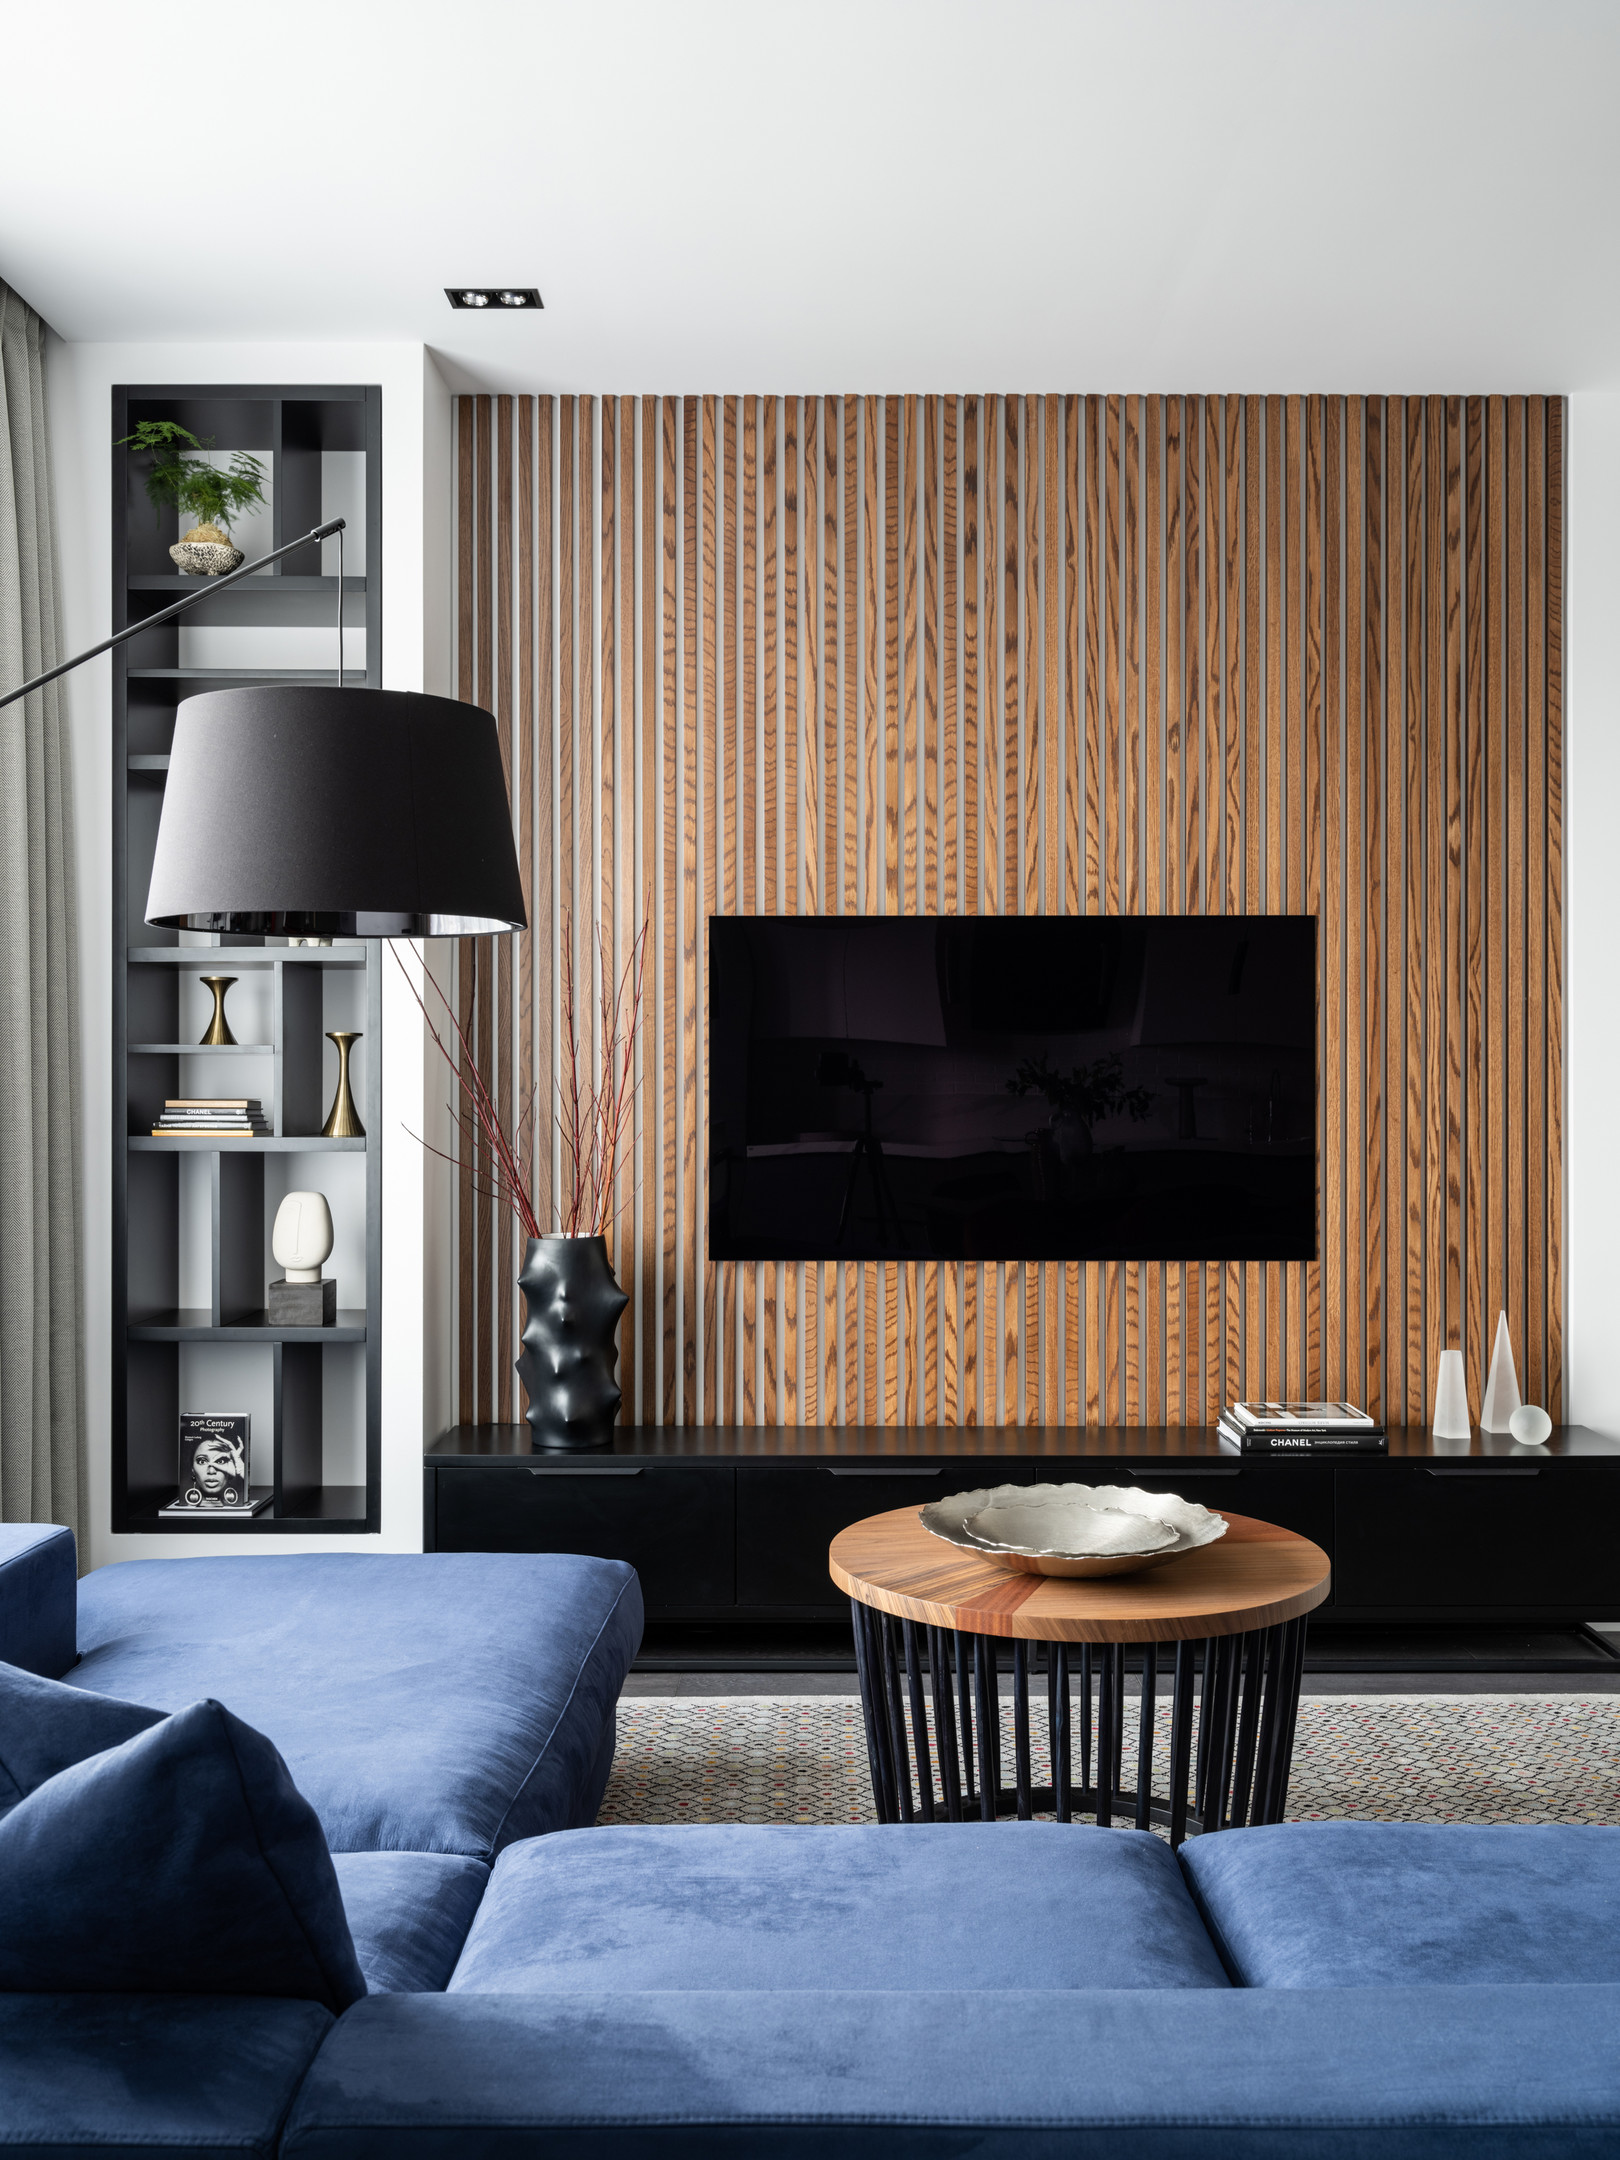 Đối diện sofa là bức tường treo tivi, được trang trí bằng những thanh lam gỗ vững chãi, cho vẻ đẹp sang trọng, đồng thời tạo sự kết nối về màu sắc với bàn nước thanh lịch. Một chiếc đèn sàn màu đen tại sofa phục vụ cho nhu cầu đọc sách.